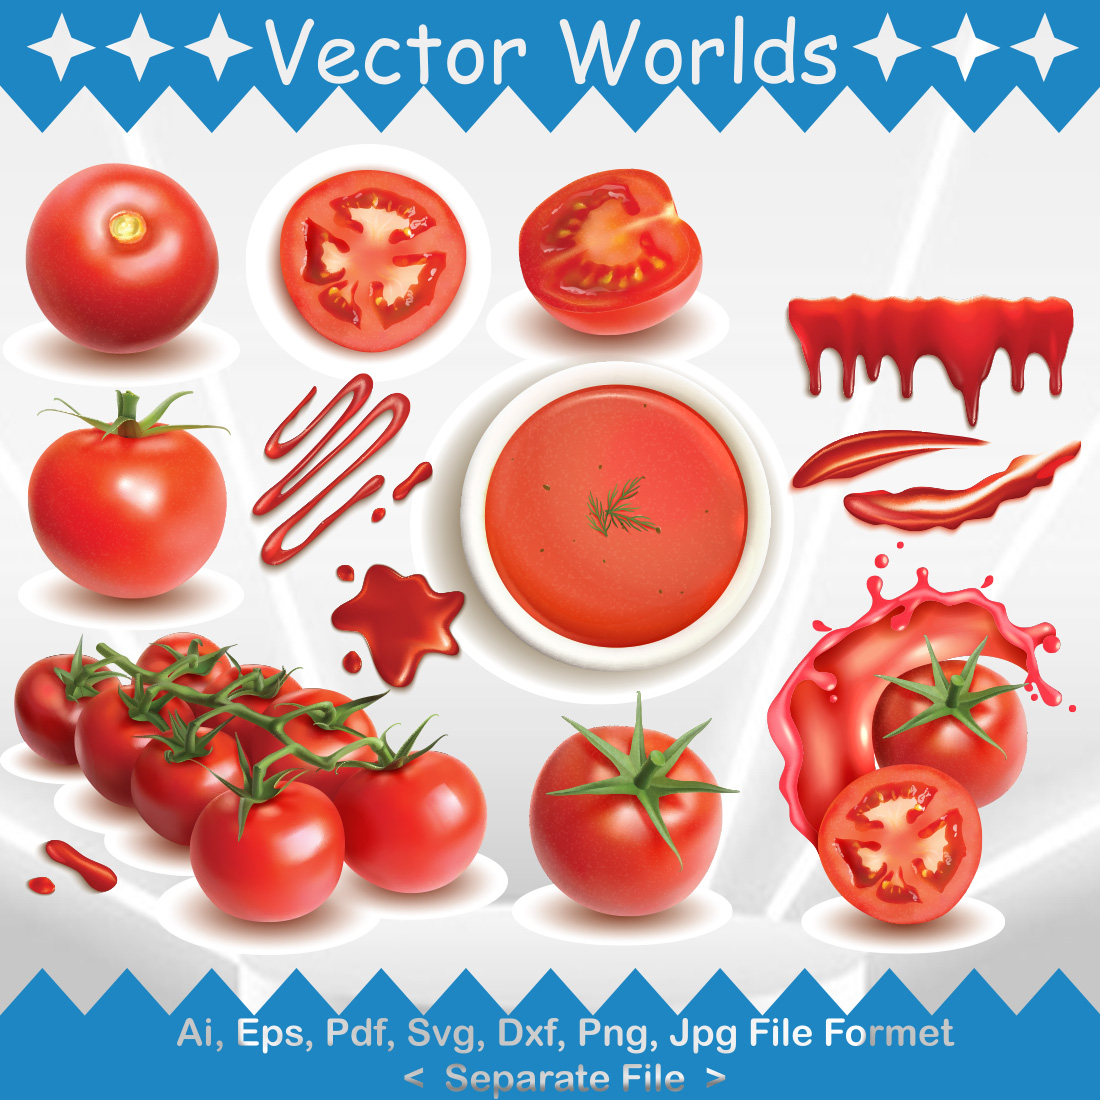 La Tomatina SVG Vector Design cover image.